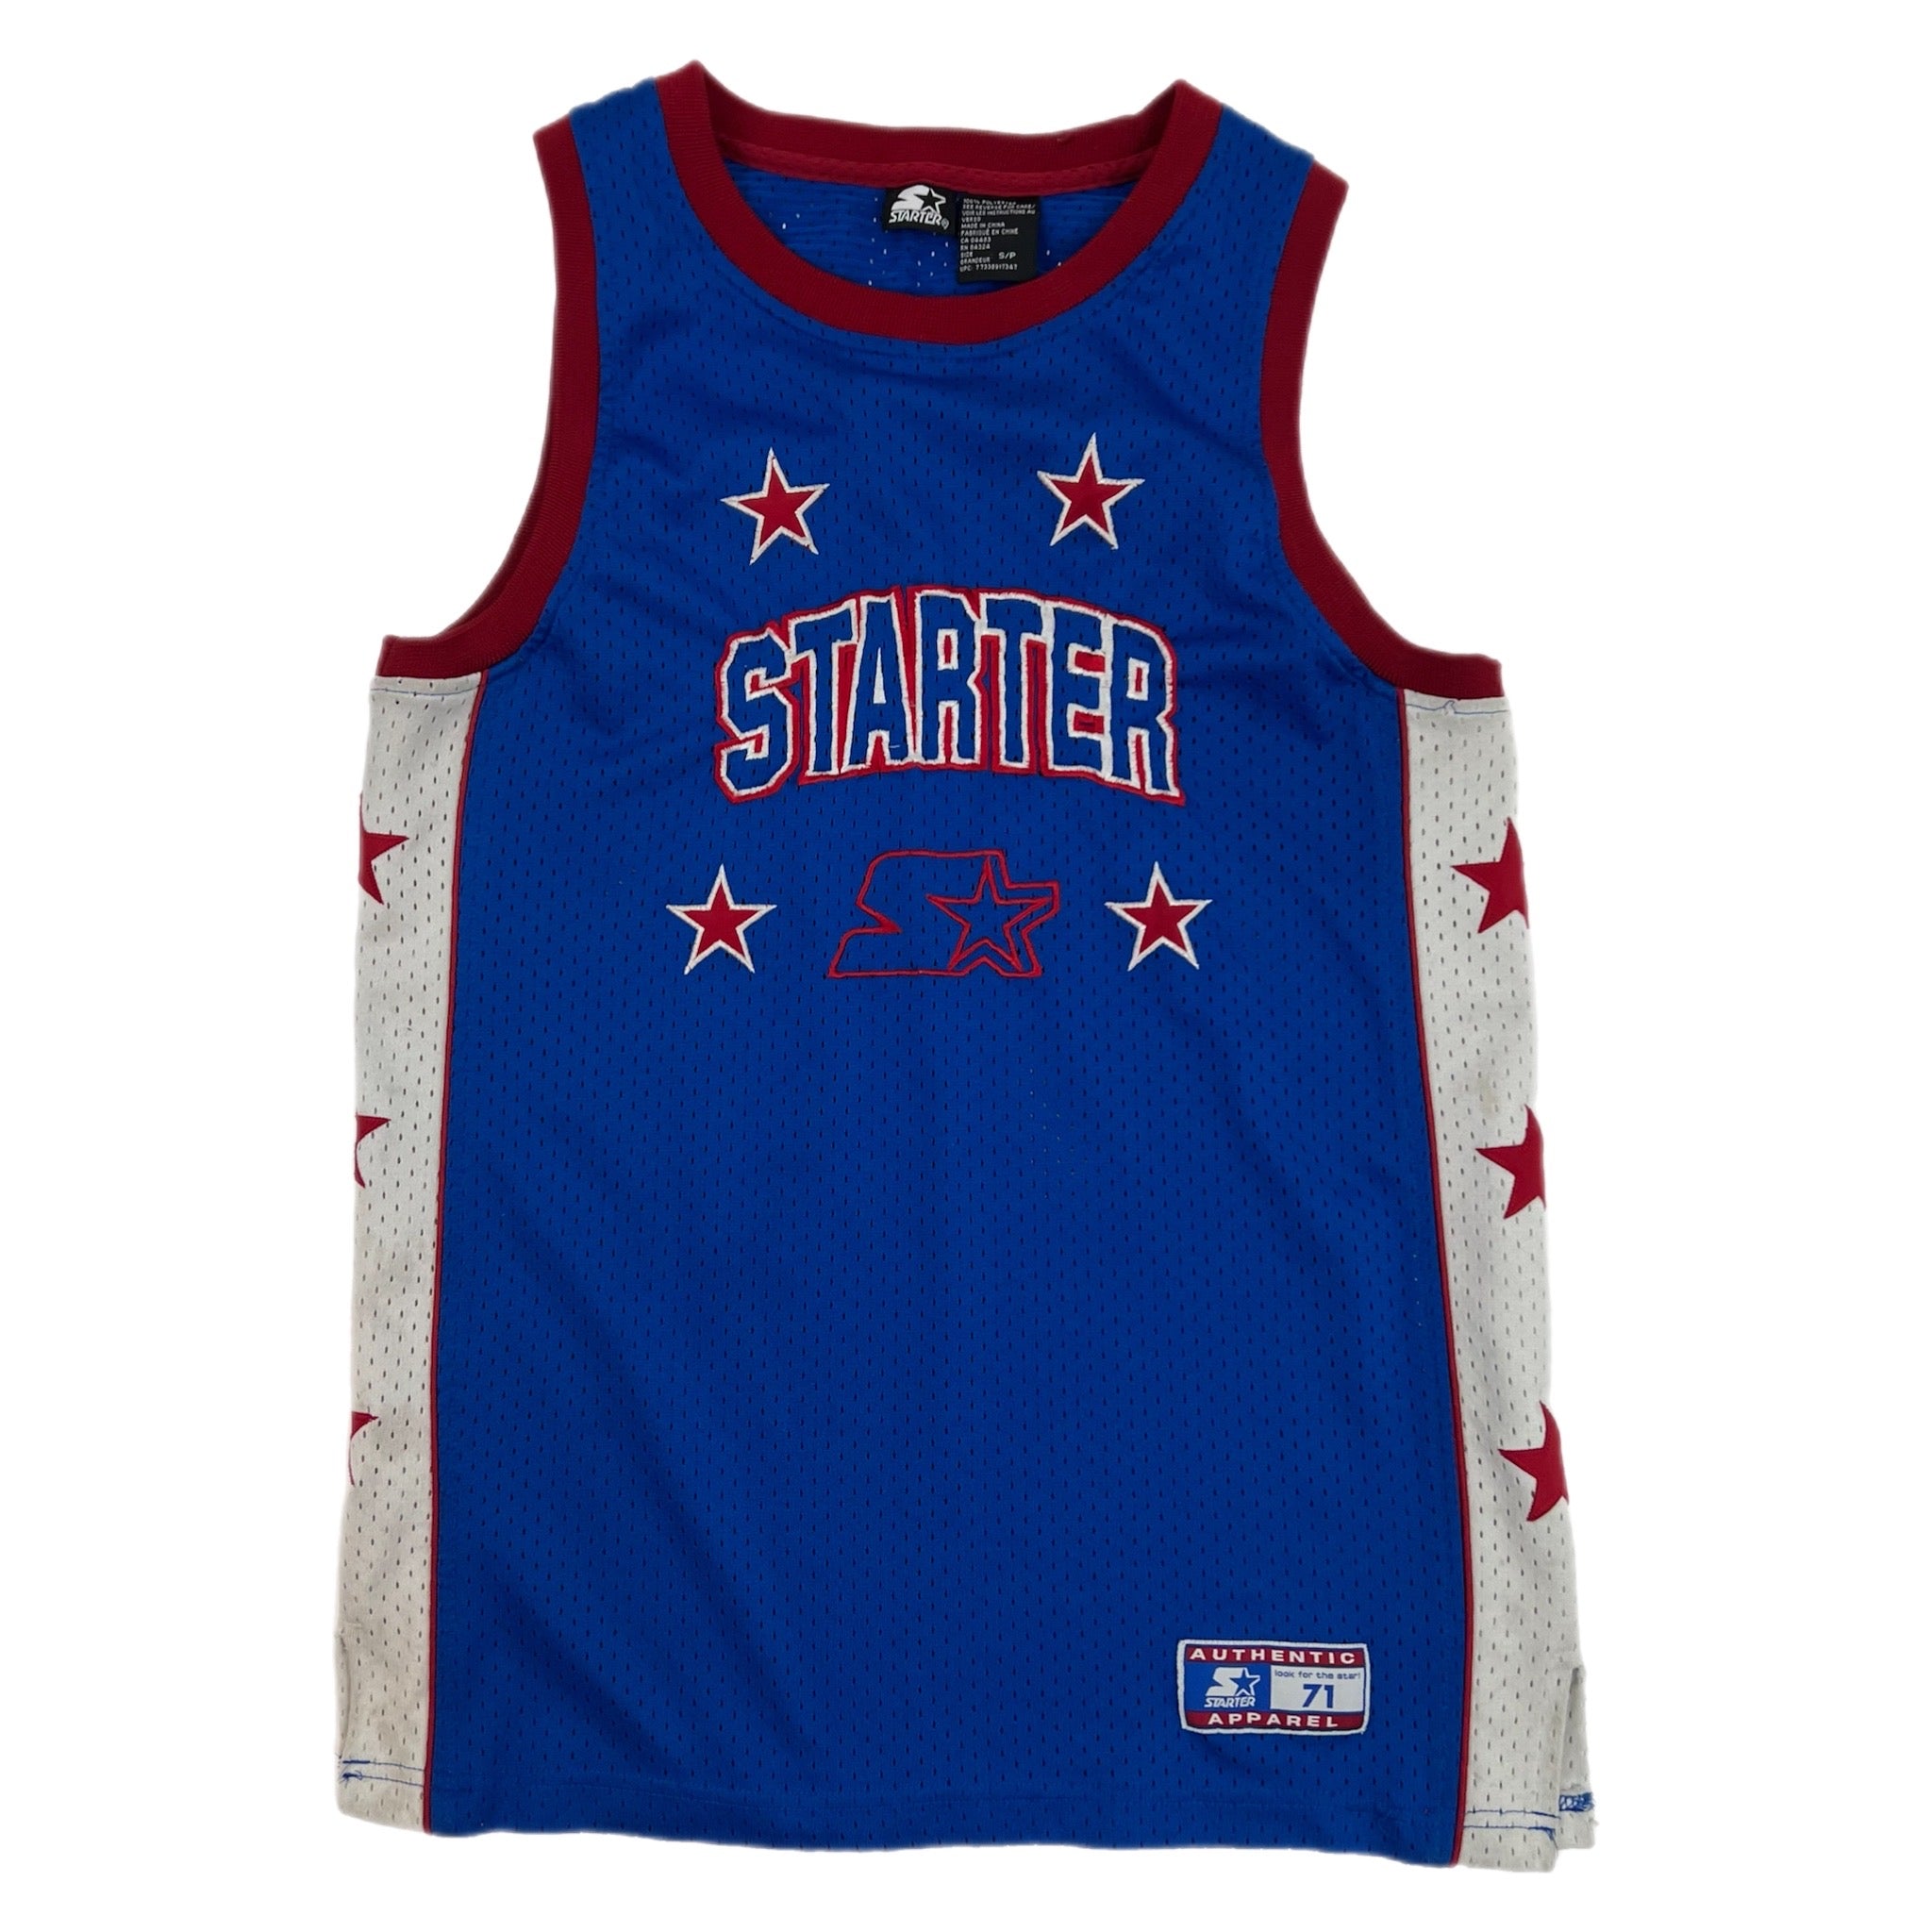 Vintage Starter Basketball Jersey